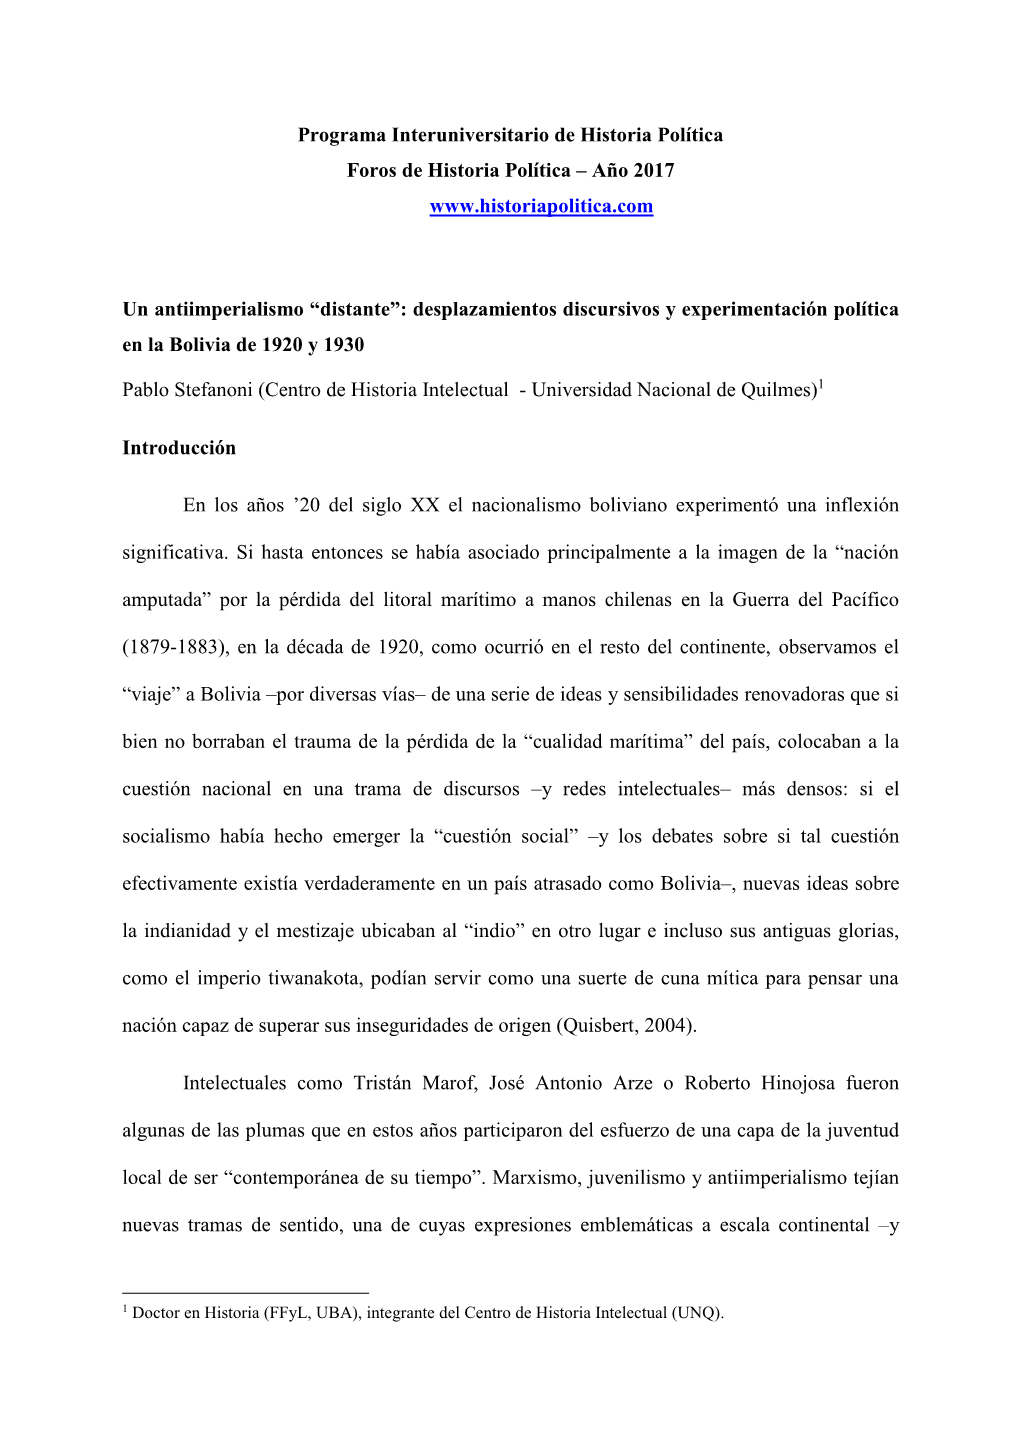 Pablo Stefanoni (Centro De Historia Intelectual - Universidad Nacional De Quilmes)1